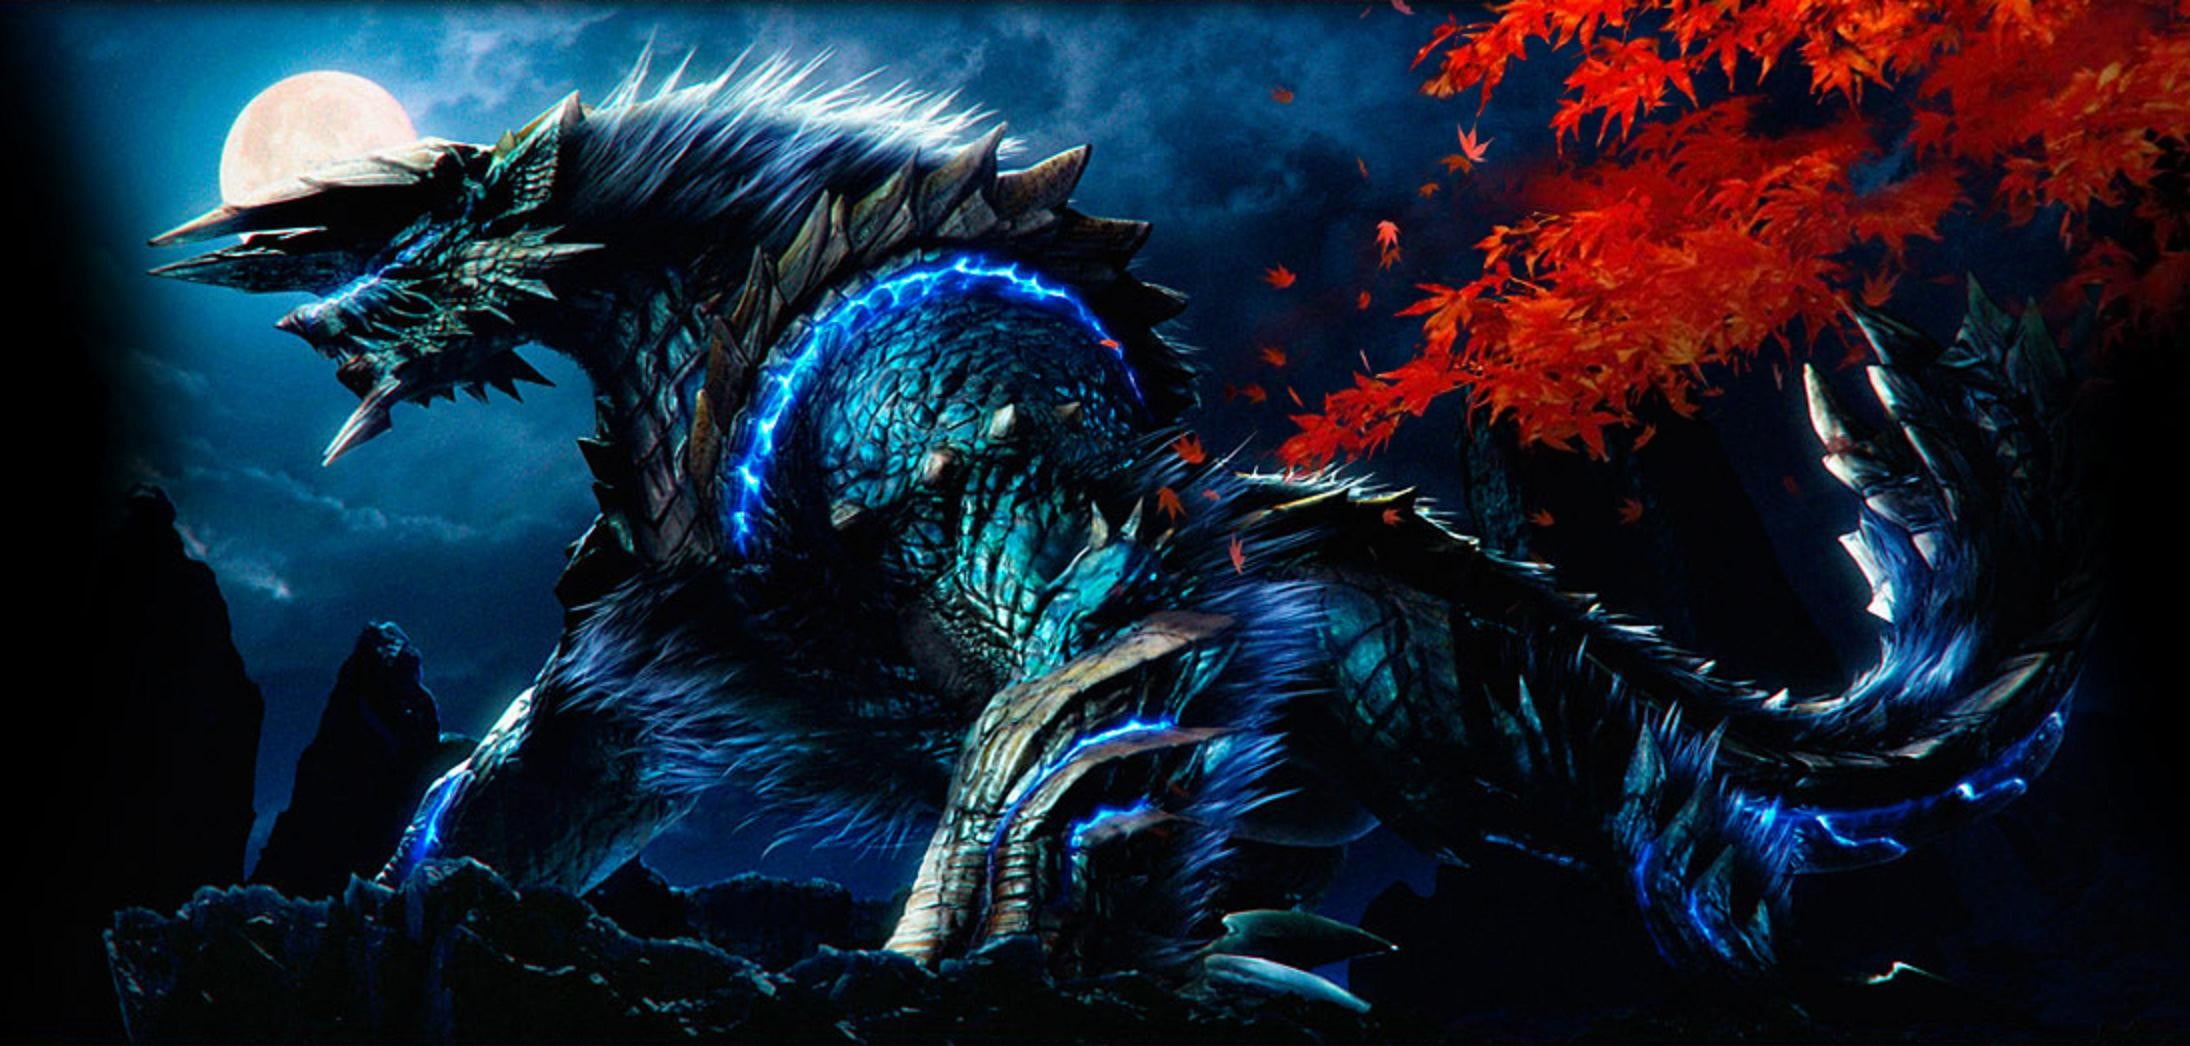 Blue Armored Animal Character Digital Wallpaper, Monster - Lightning Monster Hunter Dragon , HD Wallpaper & Backgrounds